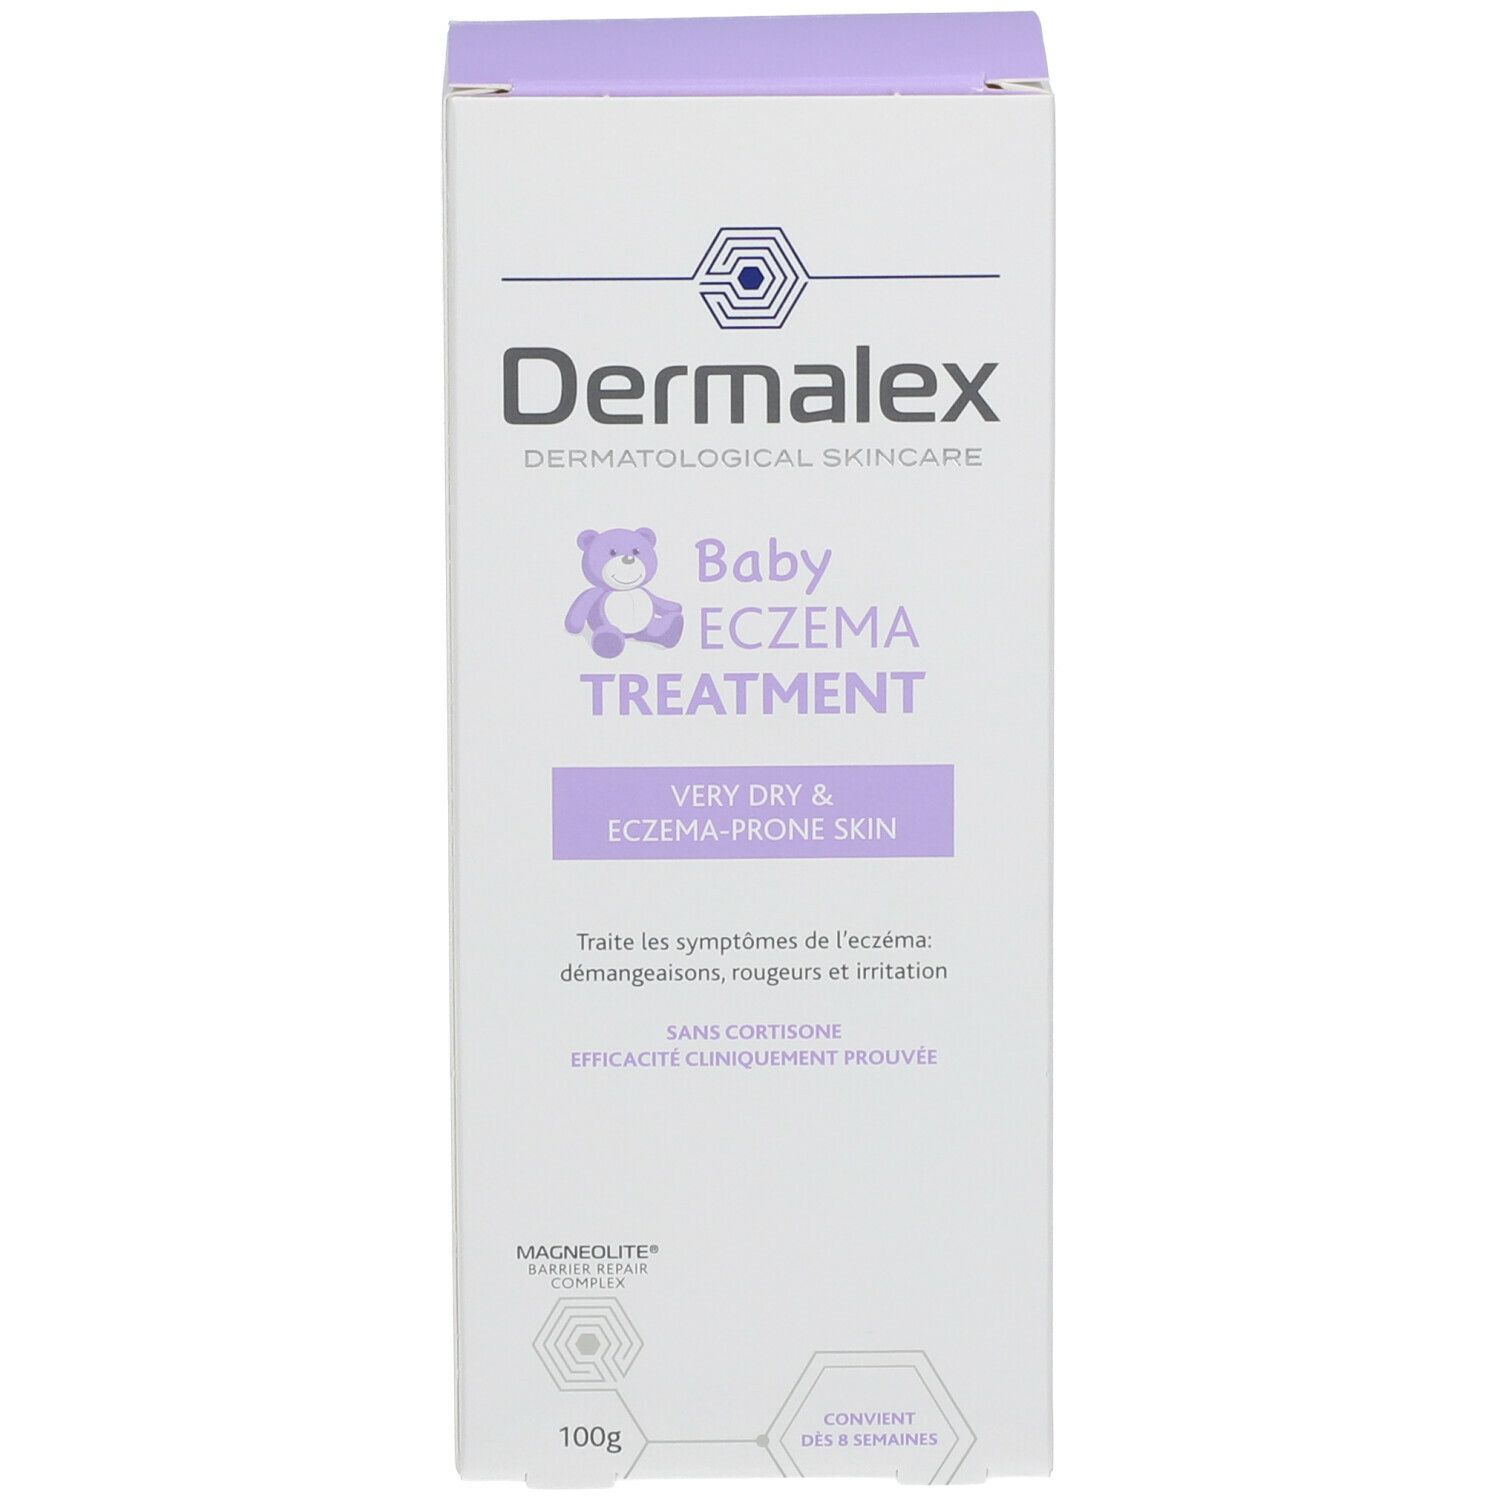 Dermalex Baby ECZEMA TREATMENT